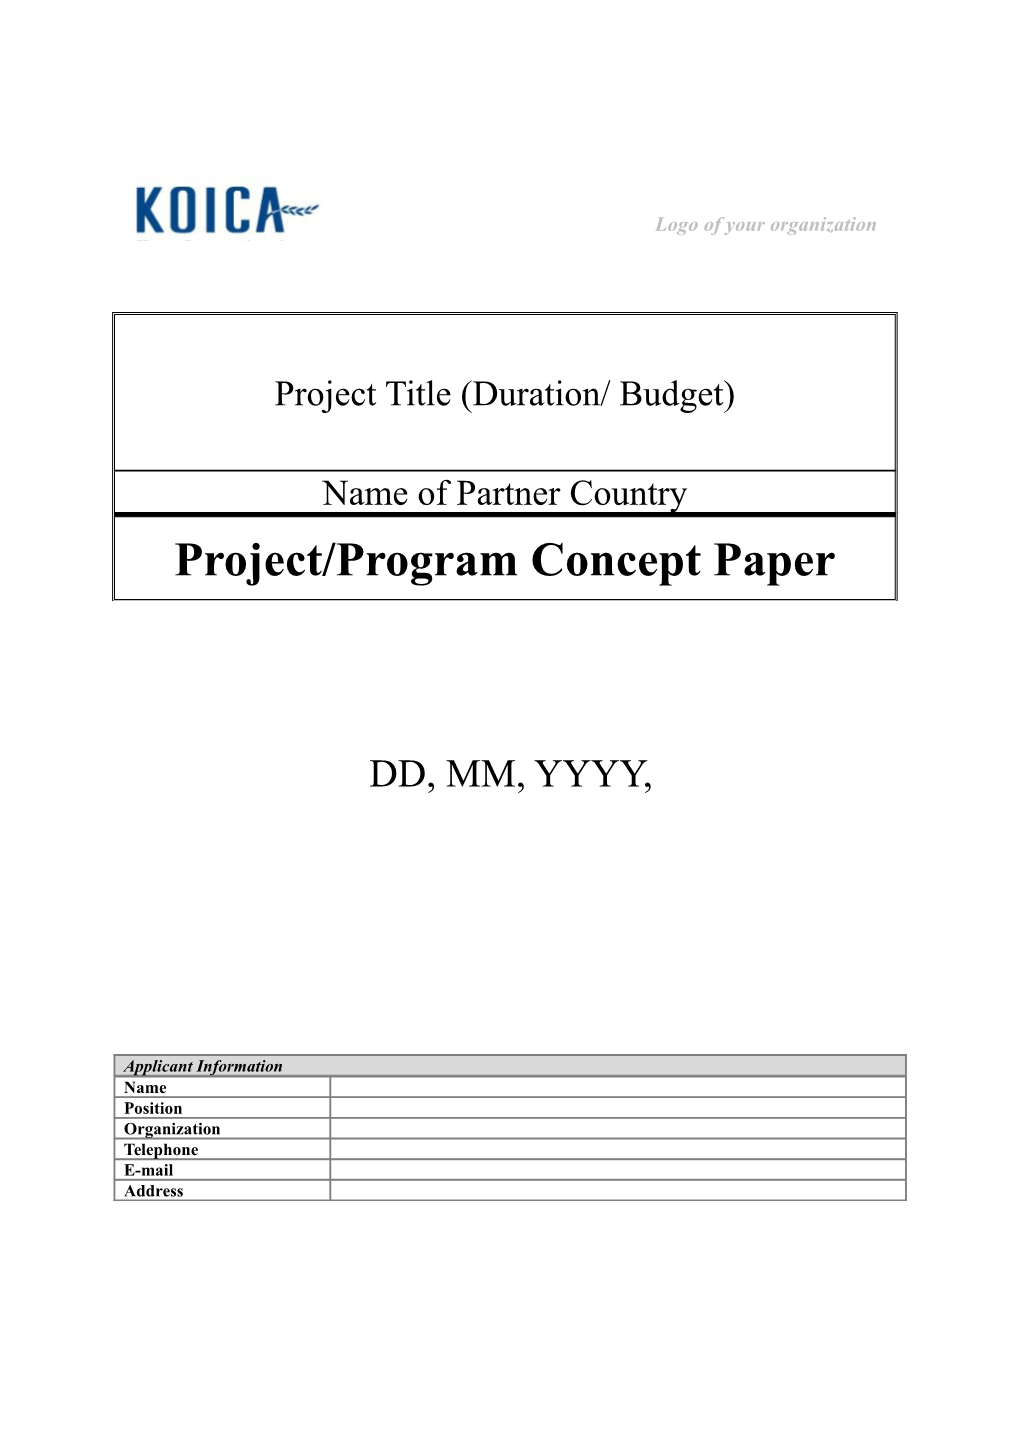 Project/Program Concept Paper (Pcp)